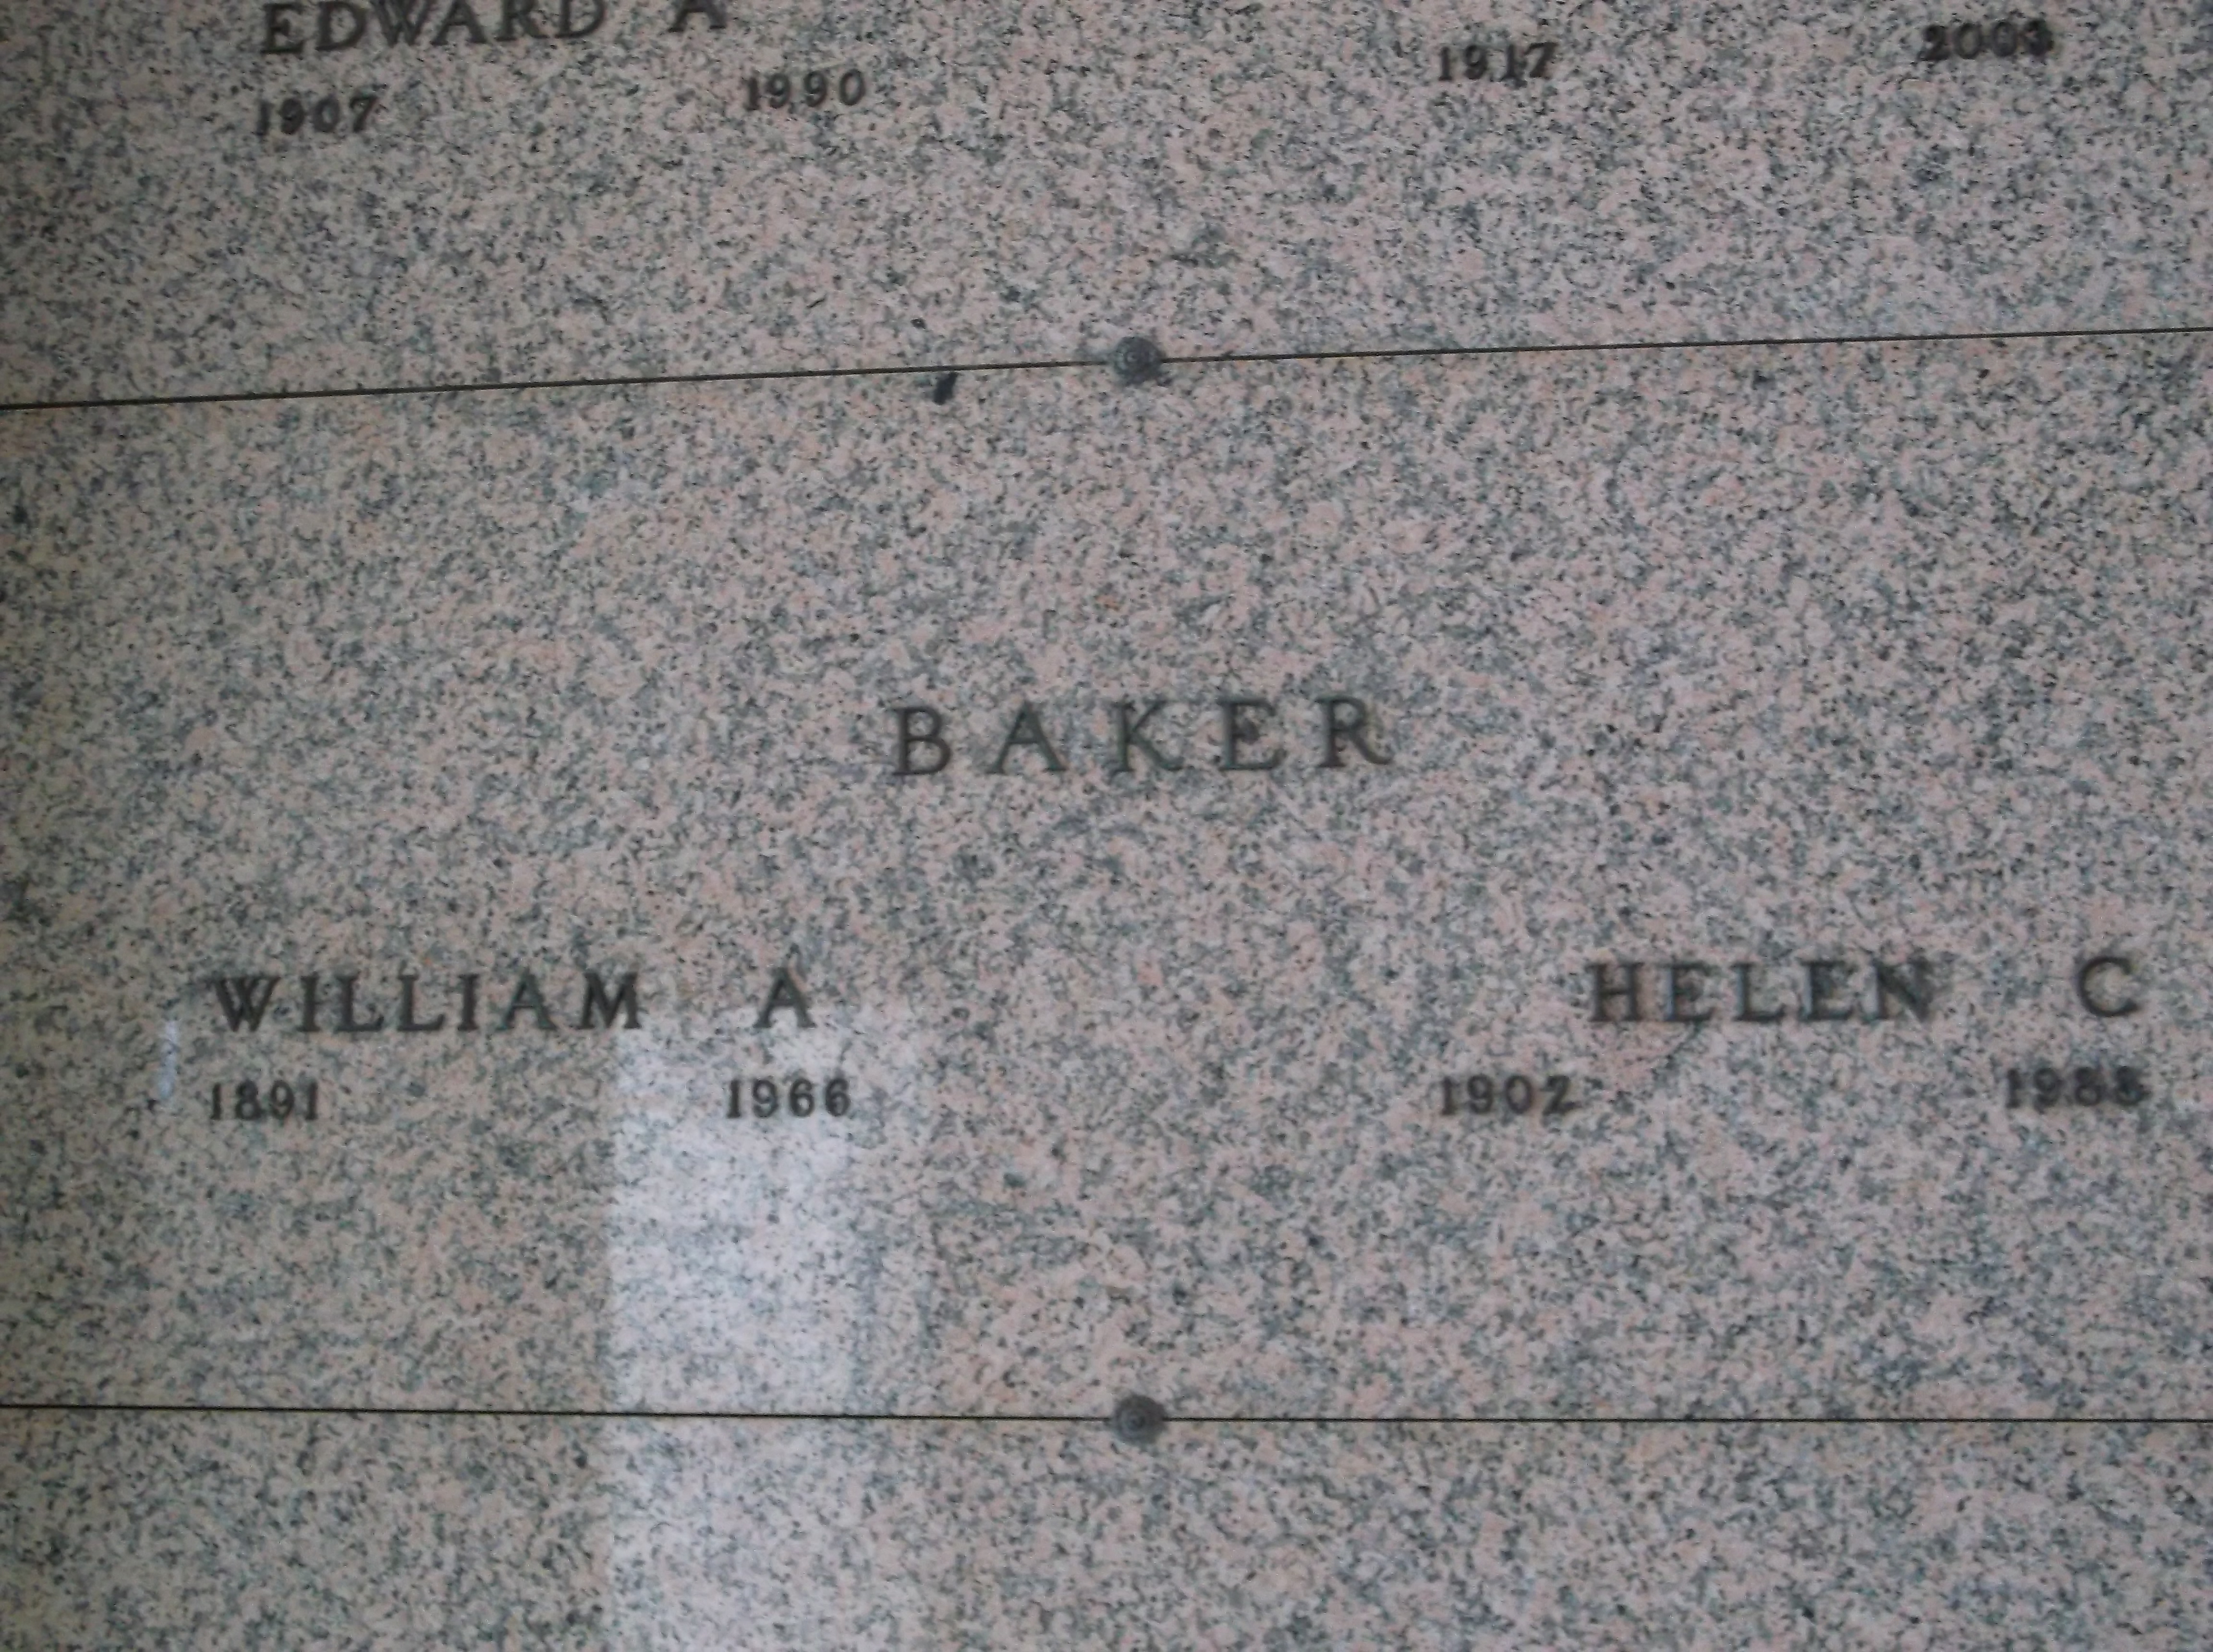 Helen C Baker